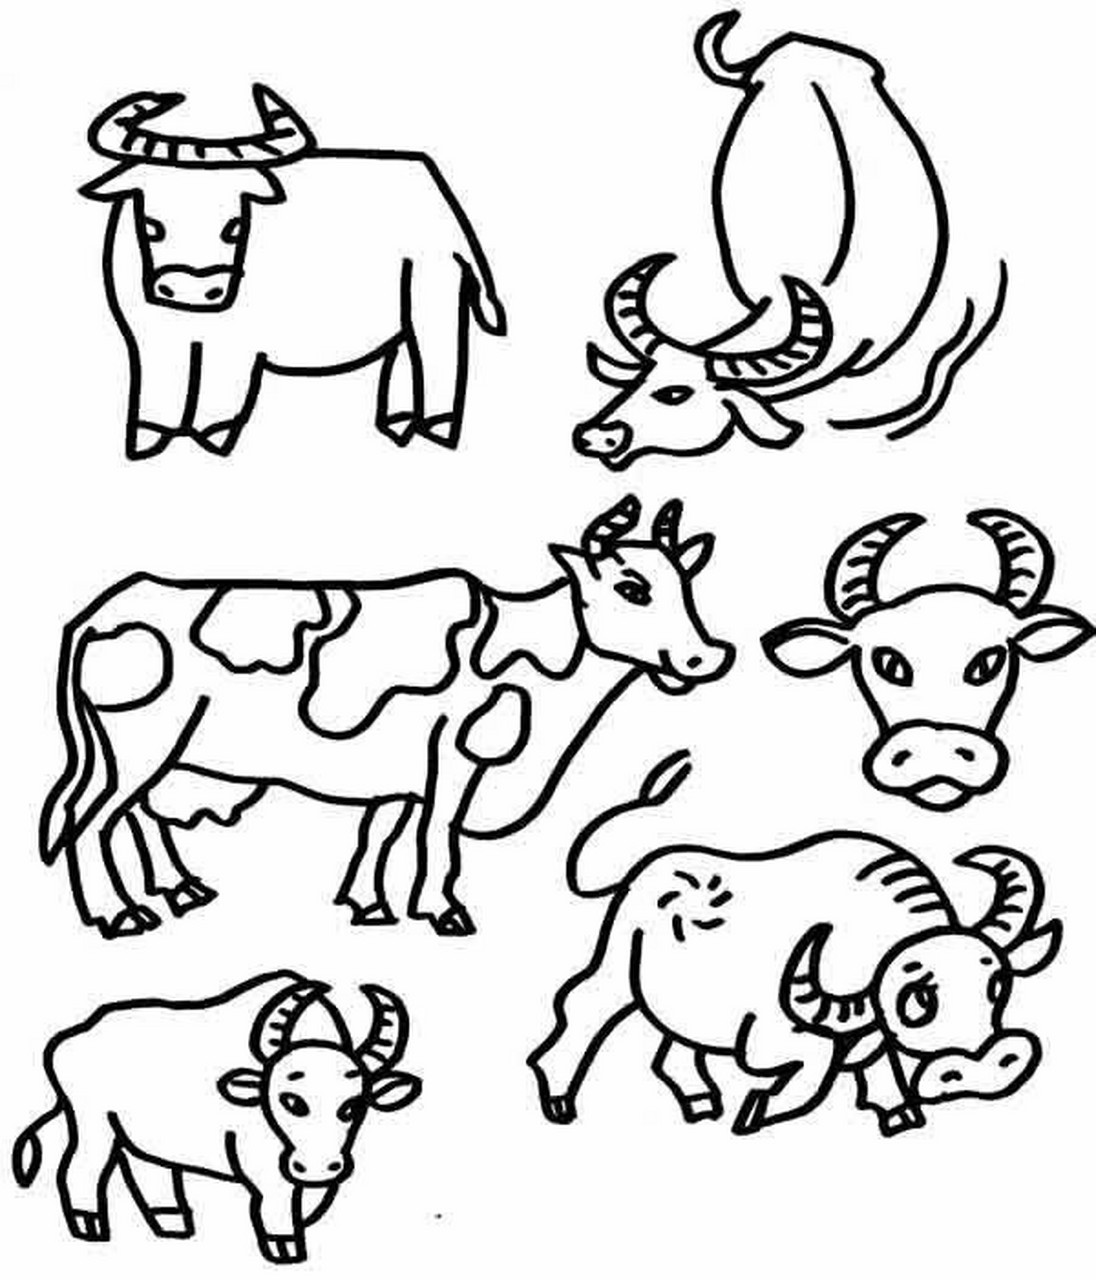 90牛年小牛简笔画/可可爱爱一分钟学会 2021年是牛年